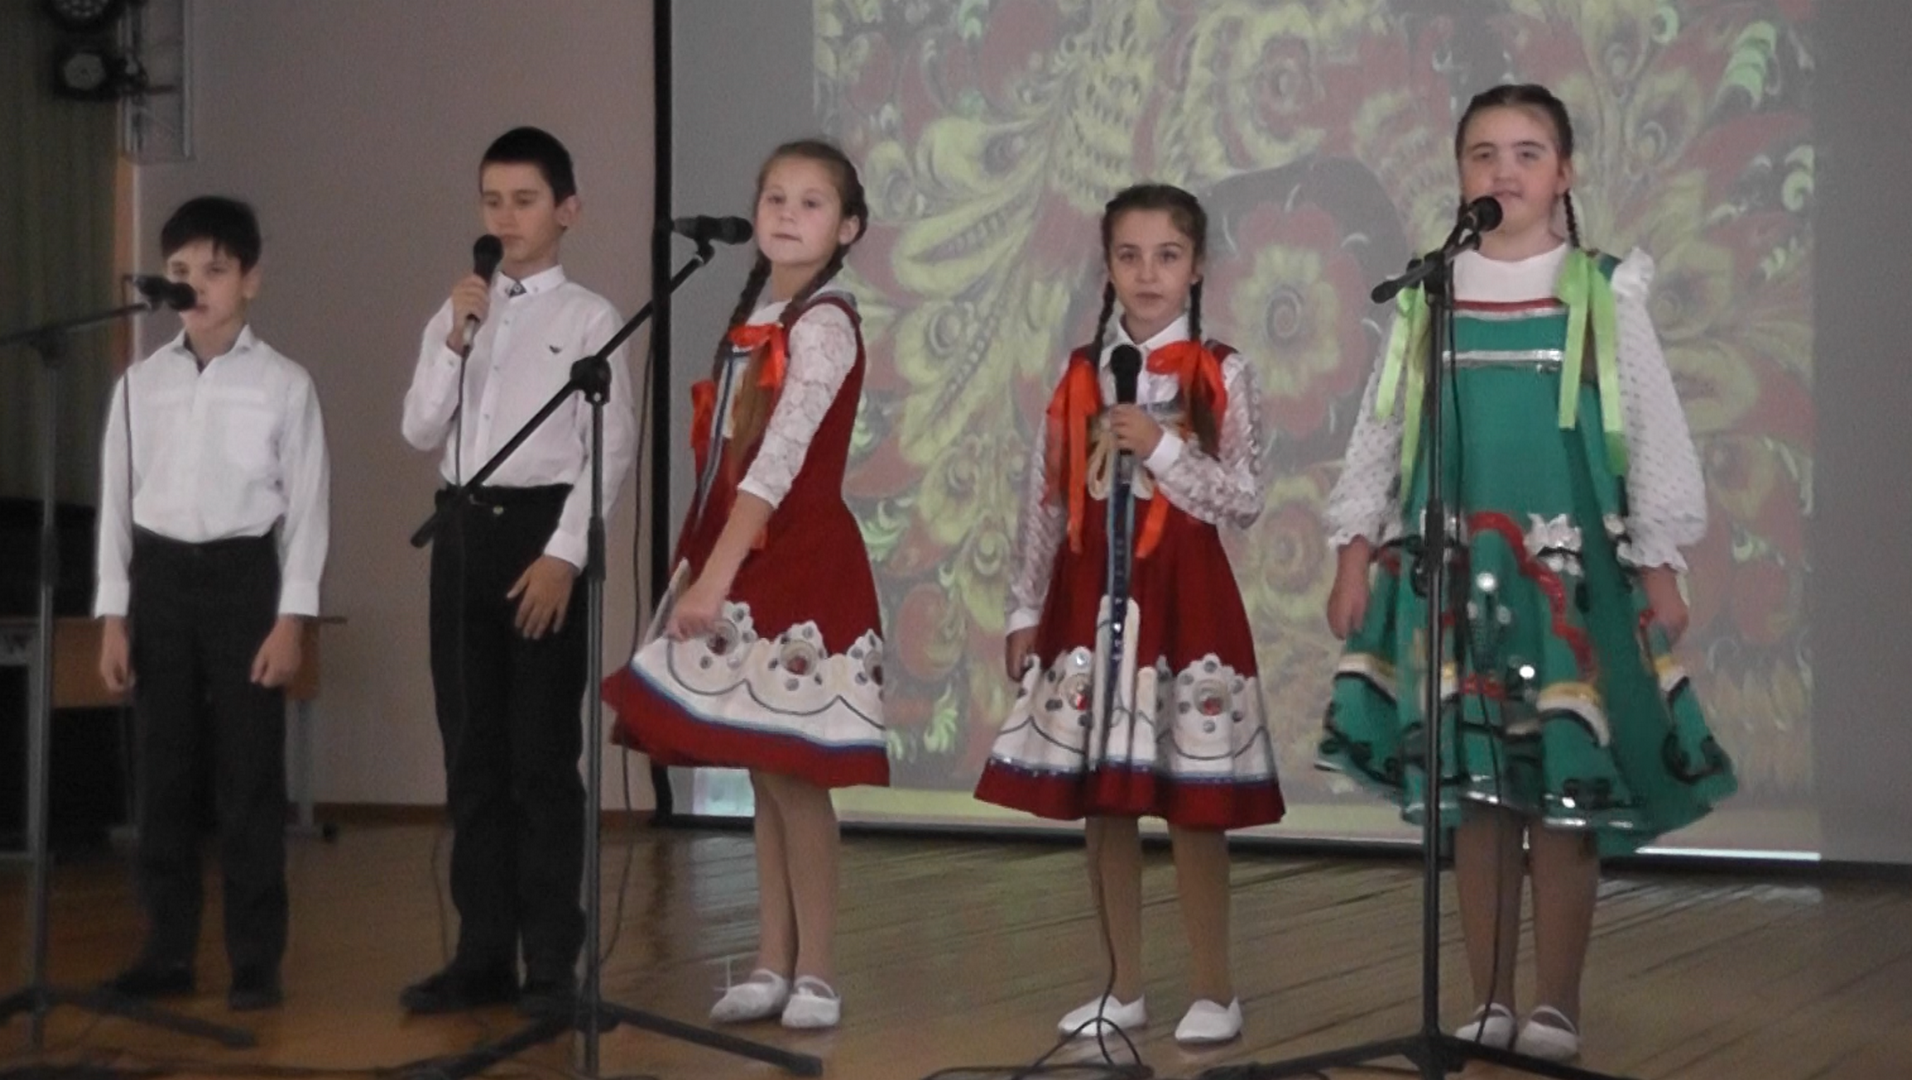 Районный фестиваль детского и юношеского творчества  «Радуга талантов».